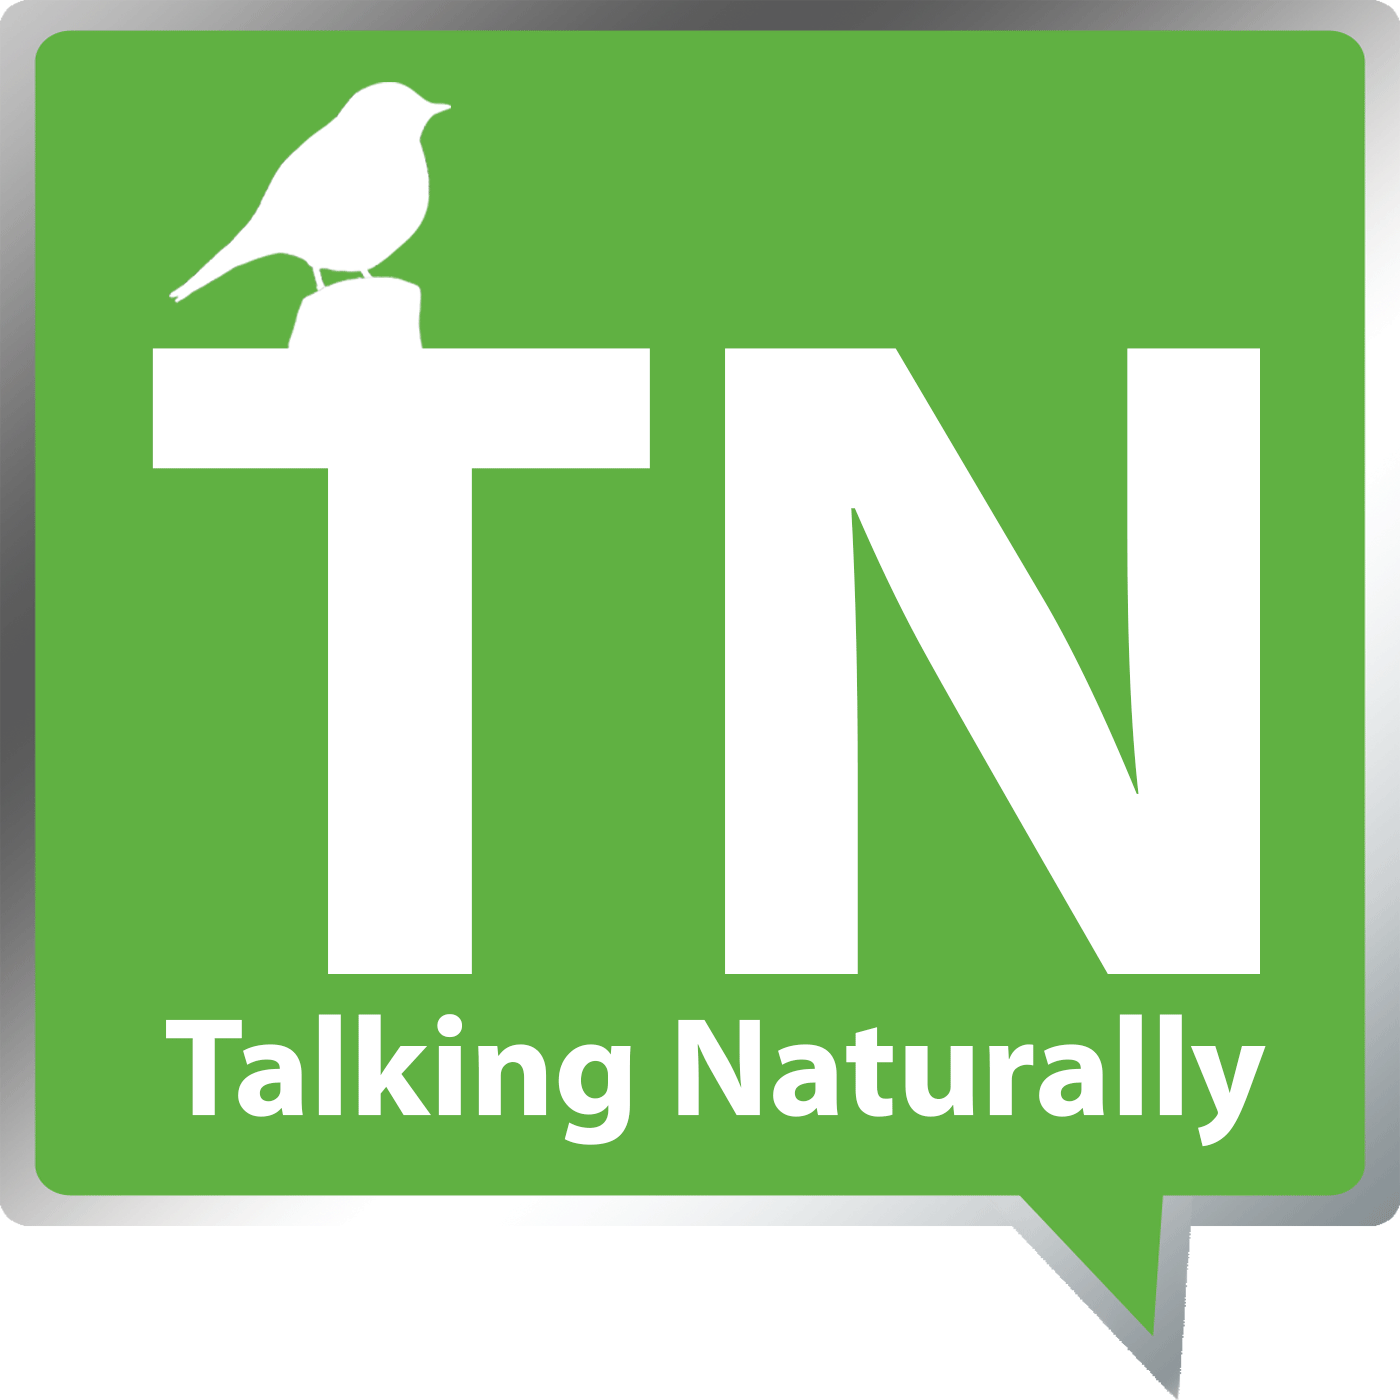 Talking Naturally